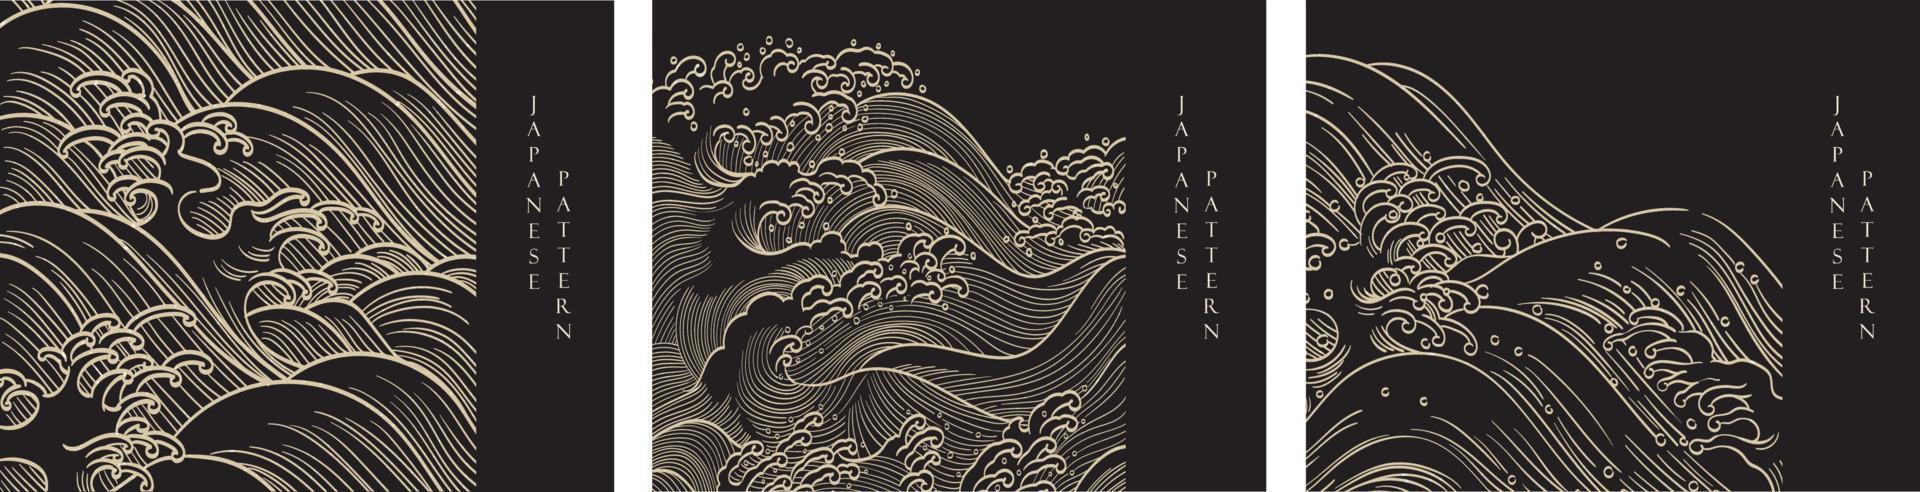 japanische handgezeichnete wellendekoration mit linienmustervektor. abstrakte Kunstbanner. ozean und meer elemente kartendesign im vintage-stil. vektor